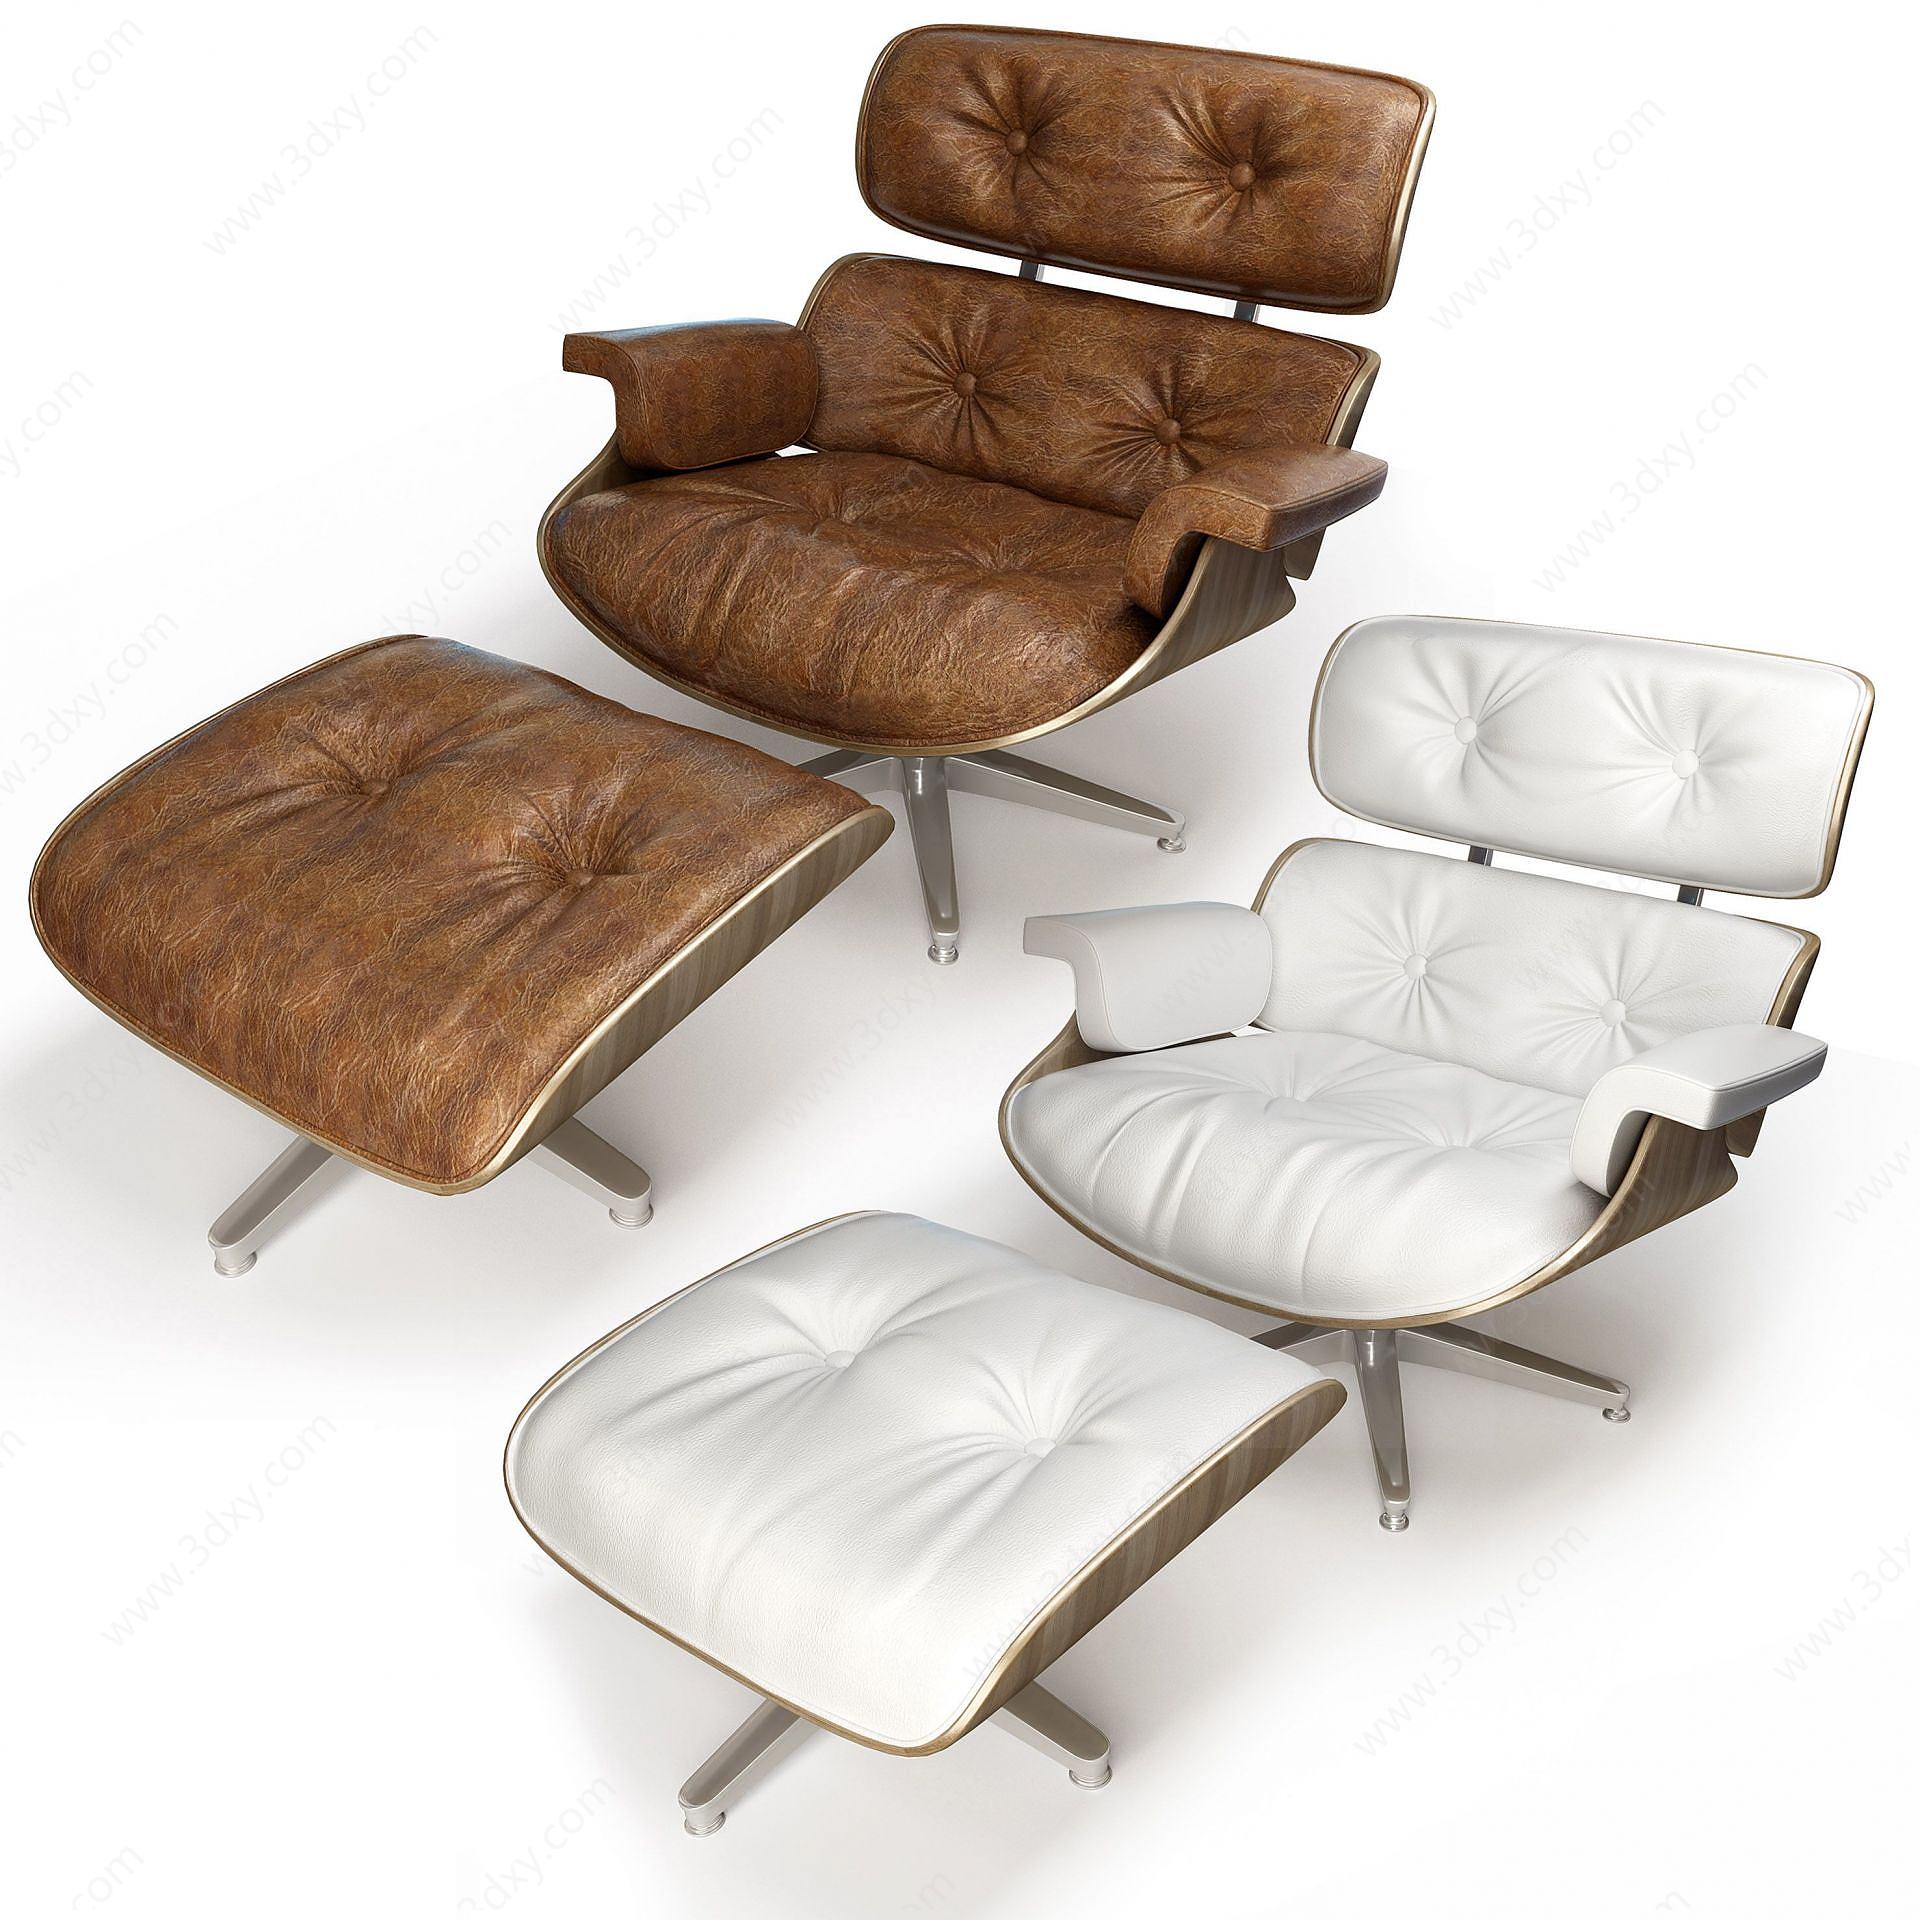 现代休闲躺椅椅凳3D模型